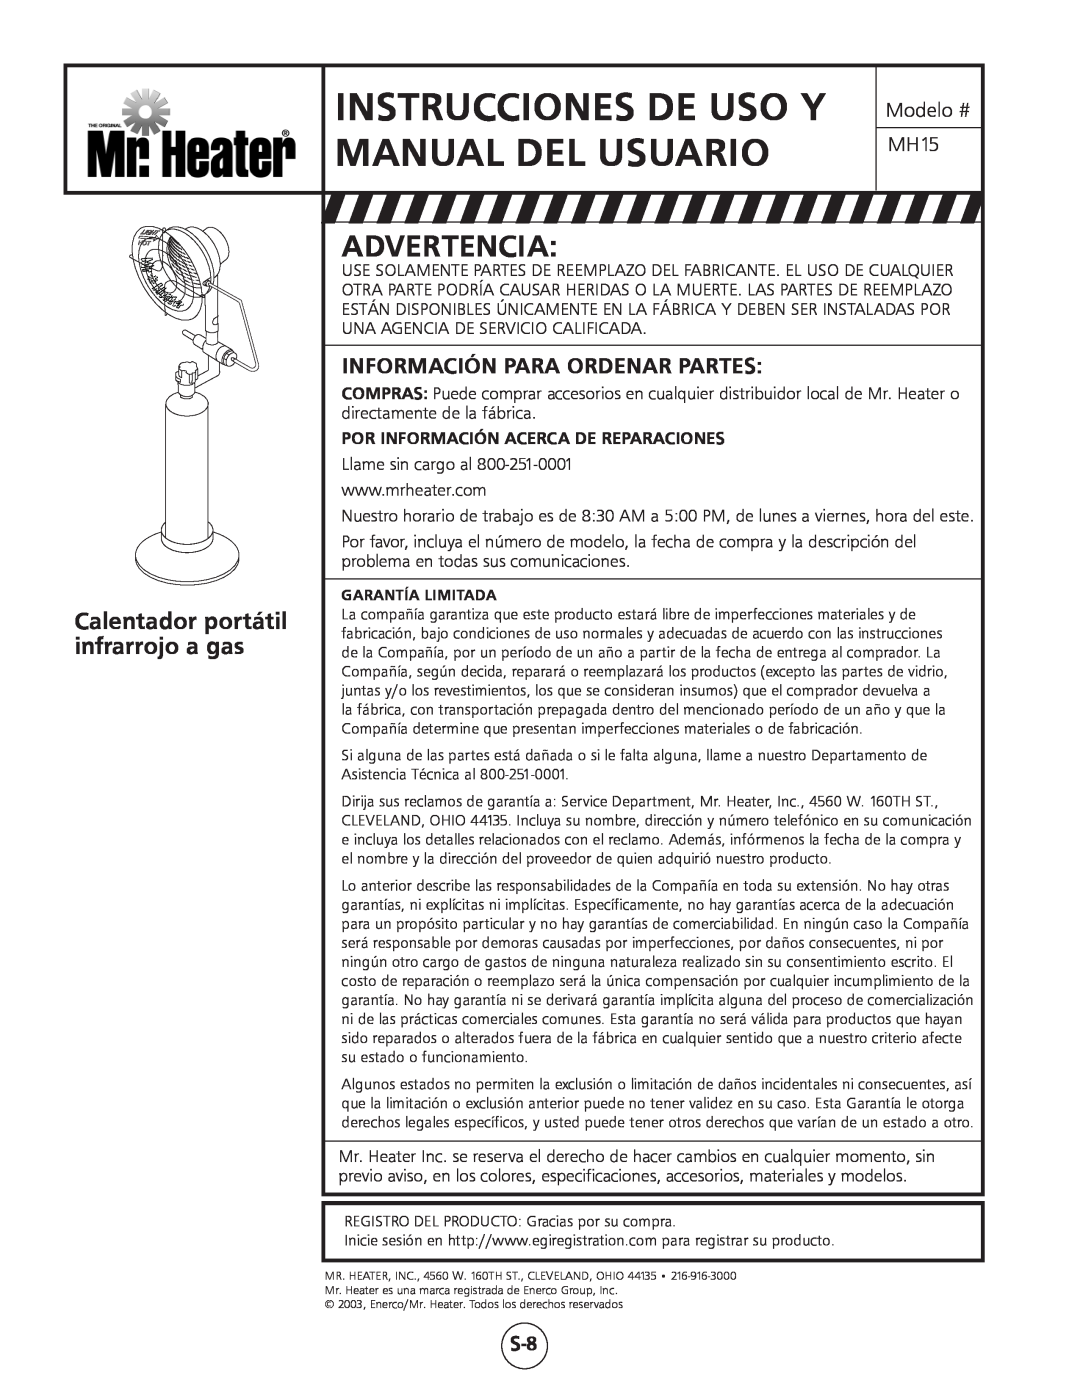 Mr. Heater MH15 Manual Del Usuario, Instrucciones De Uso Y, Calentador portátil, infrarrojo a gas, Advertencia 